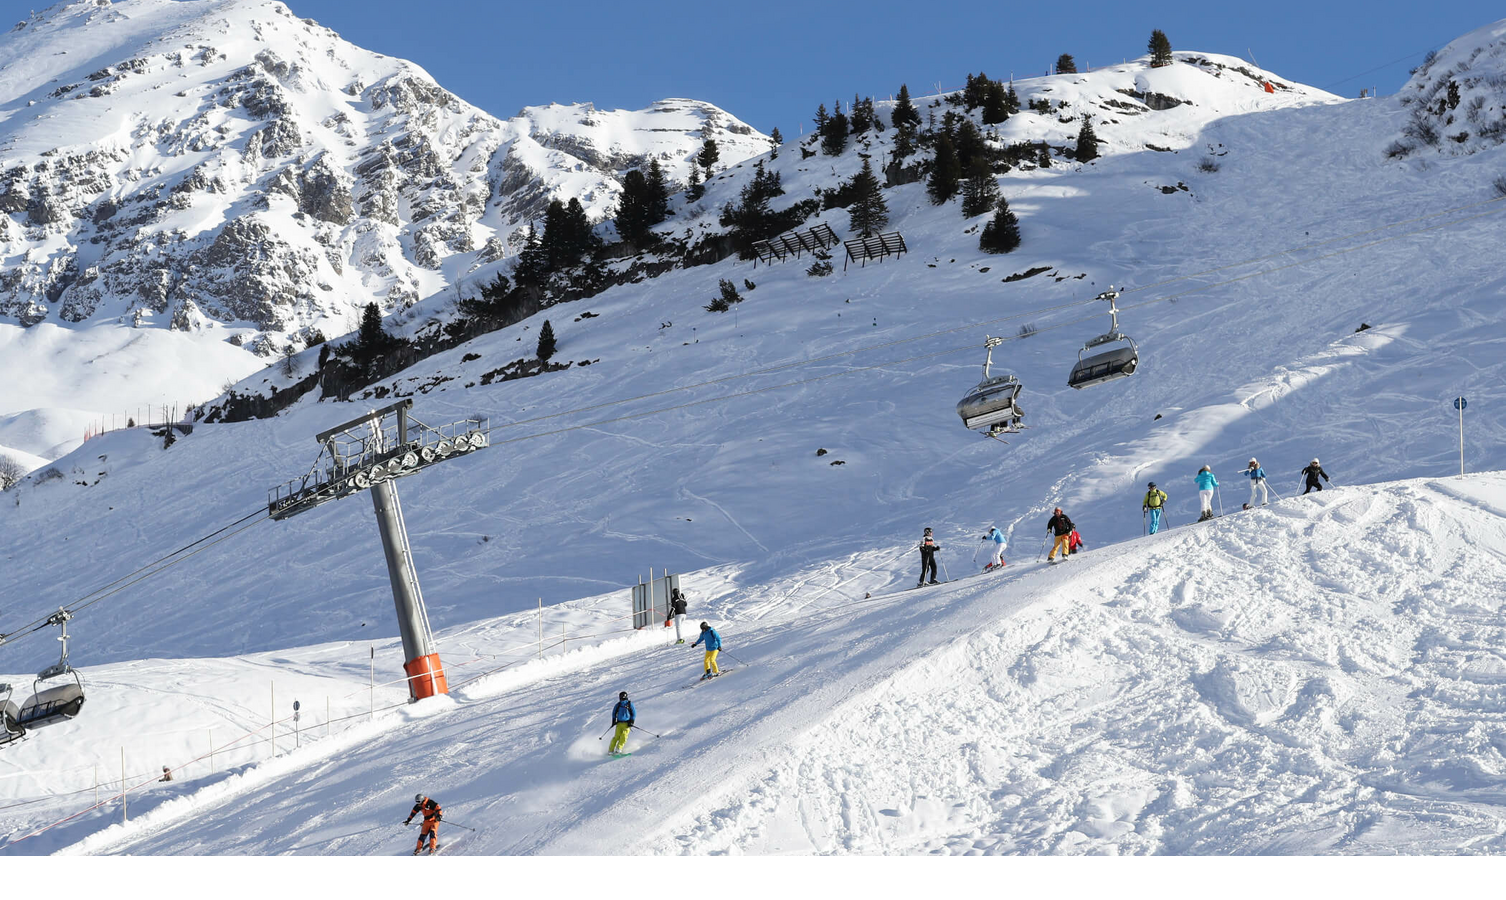 Verschneite Berghänge und Skilift im Skigebiet Lech am Arlberg